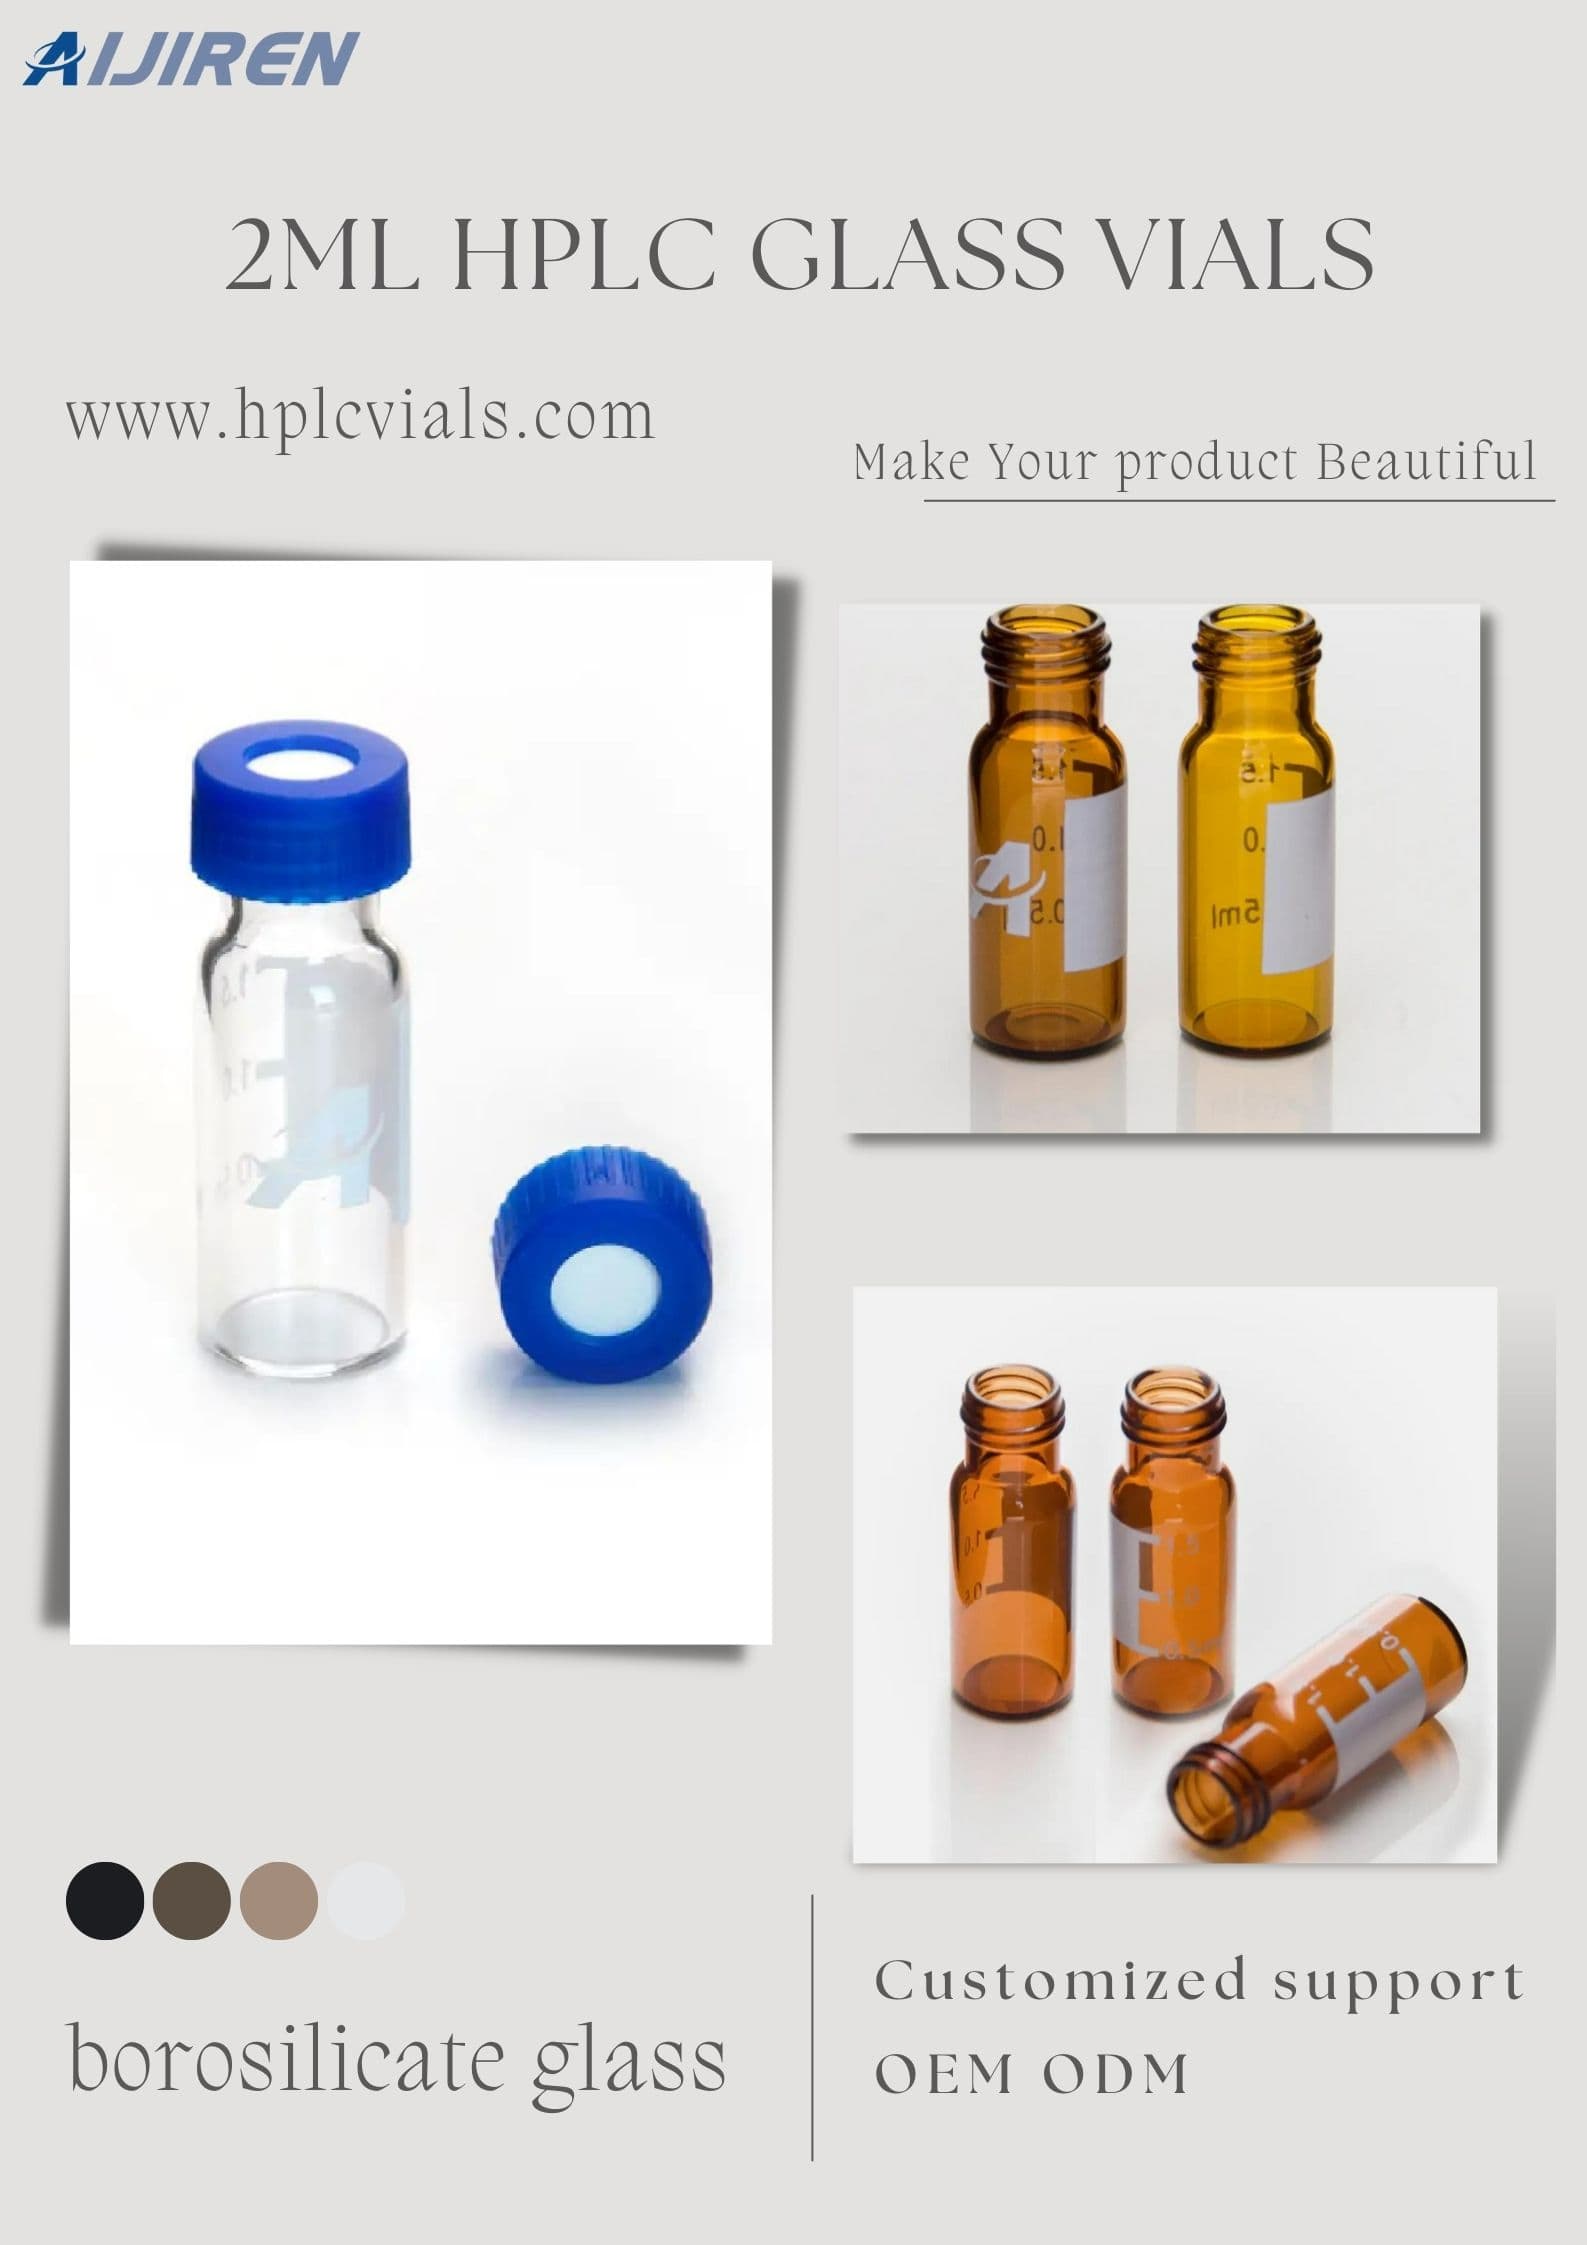 9-425 2 ml Hplc borosilicaatglas helder/amber flacon voor water